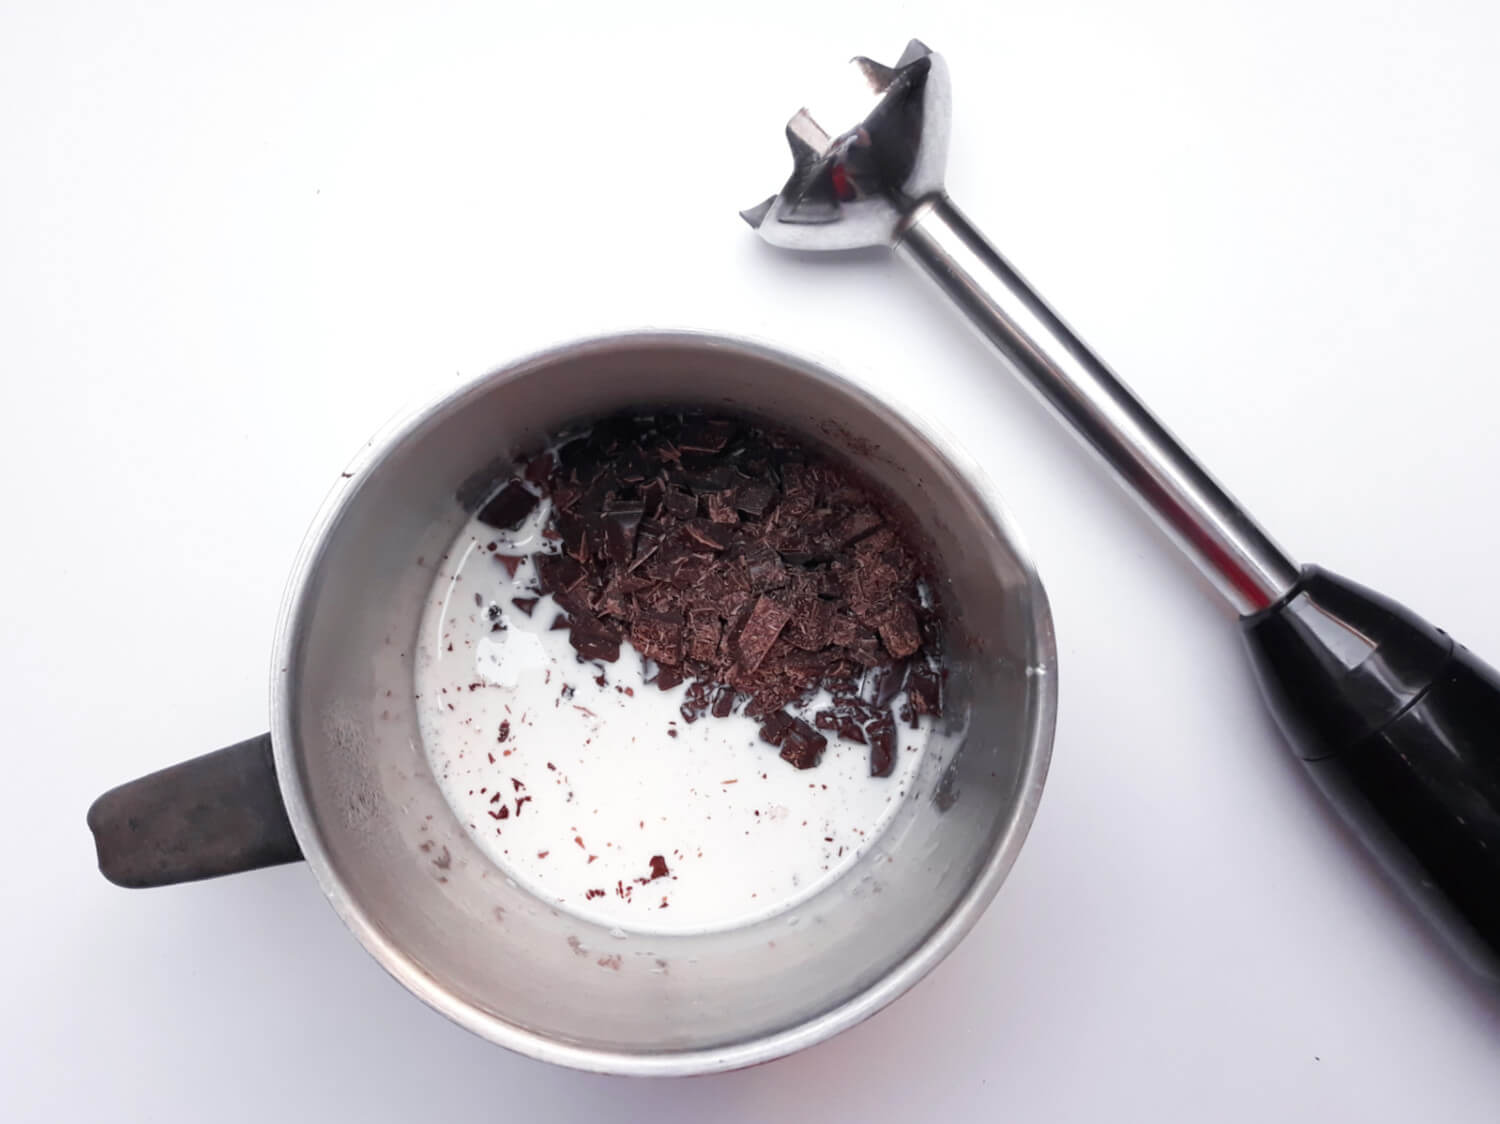 przygotowanie czekoladowego kremu namelaka z likierem, dodawanie czekolady